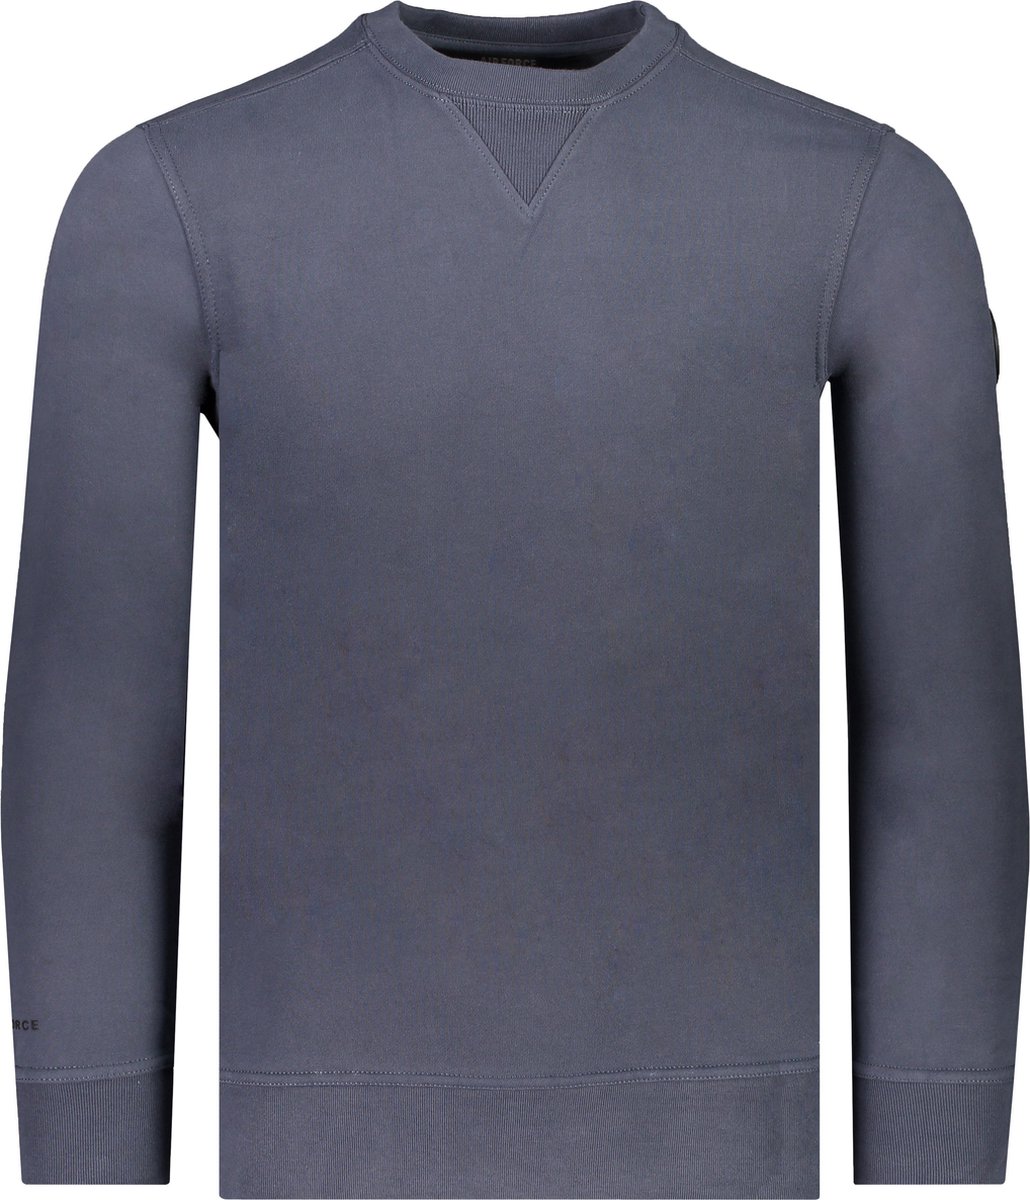 Airforce Sweater Blauw Normaal - Maat L - Mannen - Lente/Zomer Collectie - Katoen